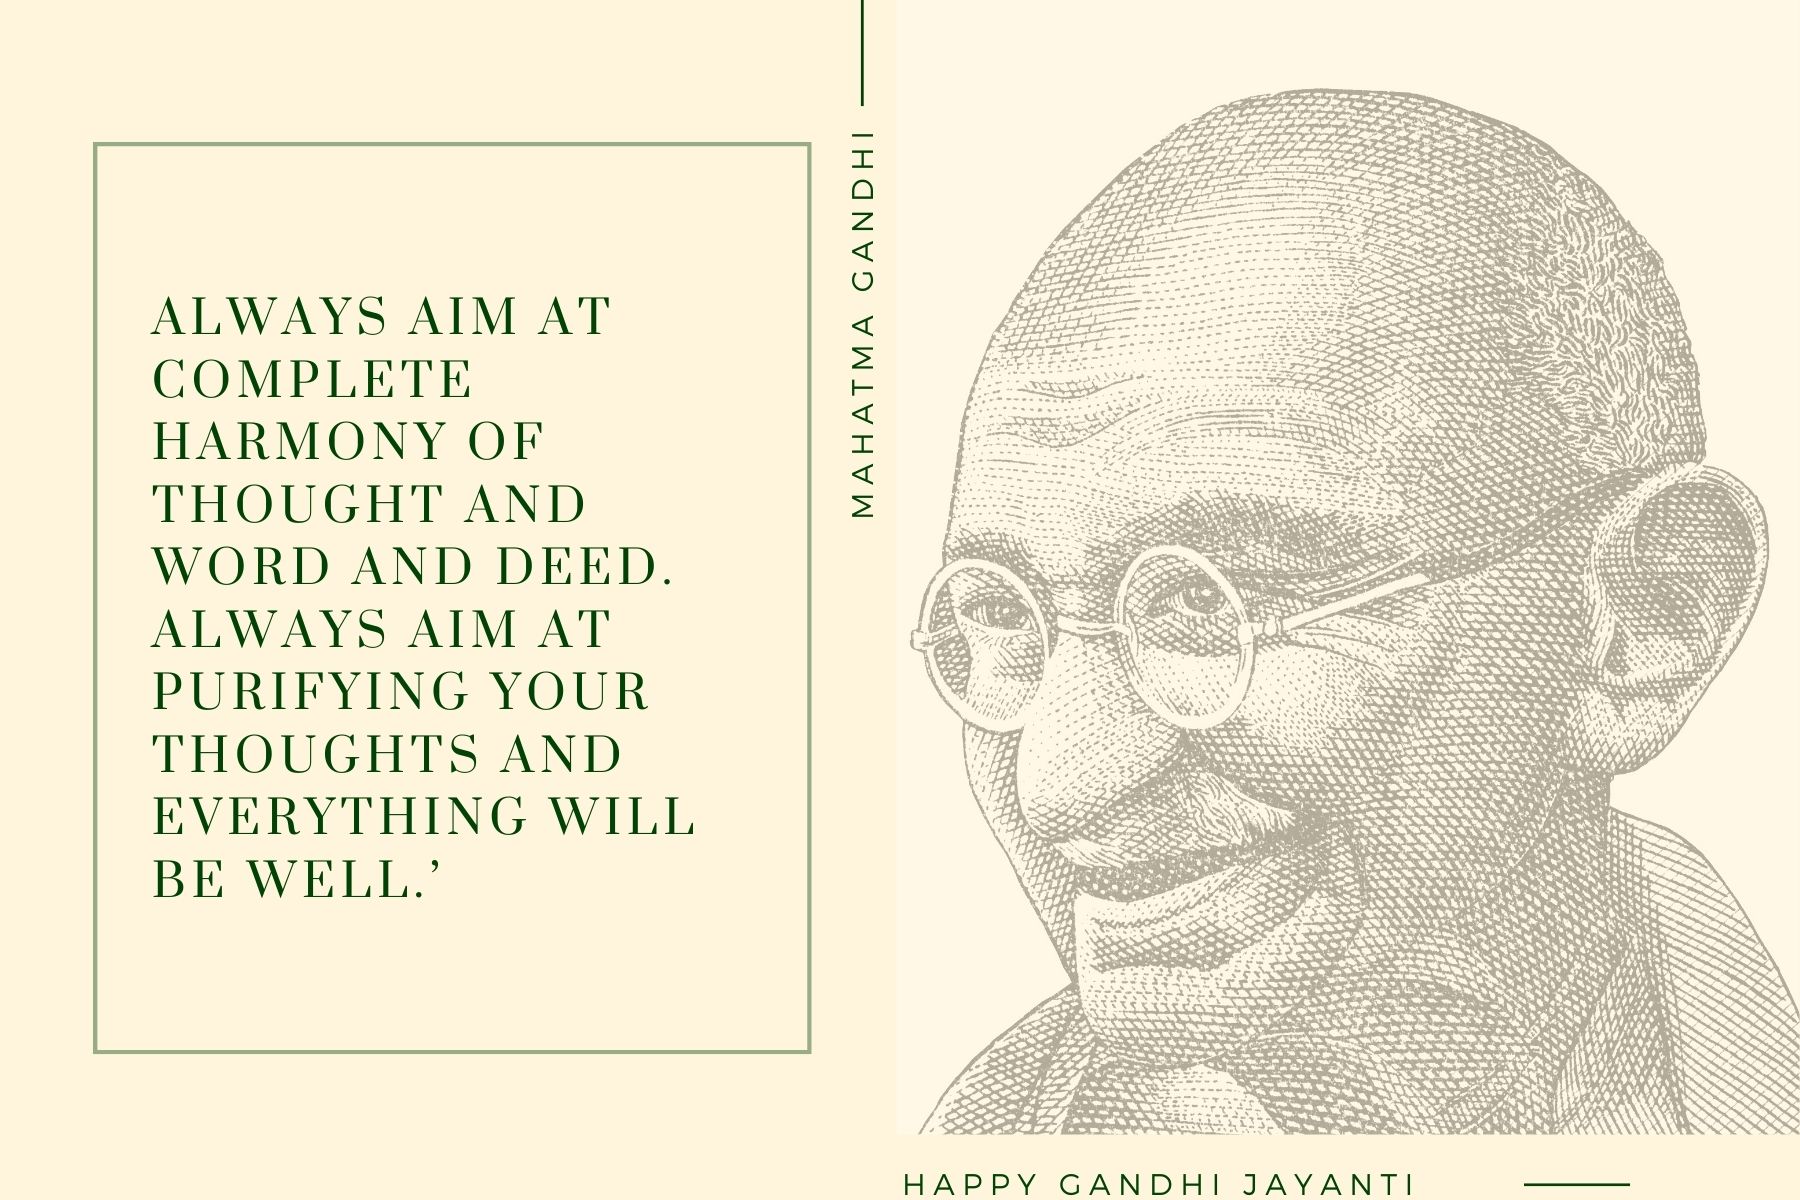 Gandhi Jayanthi wishes